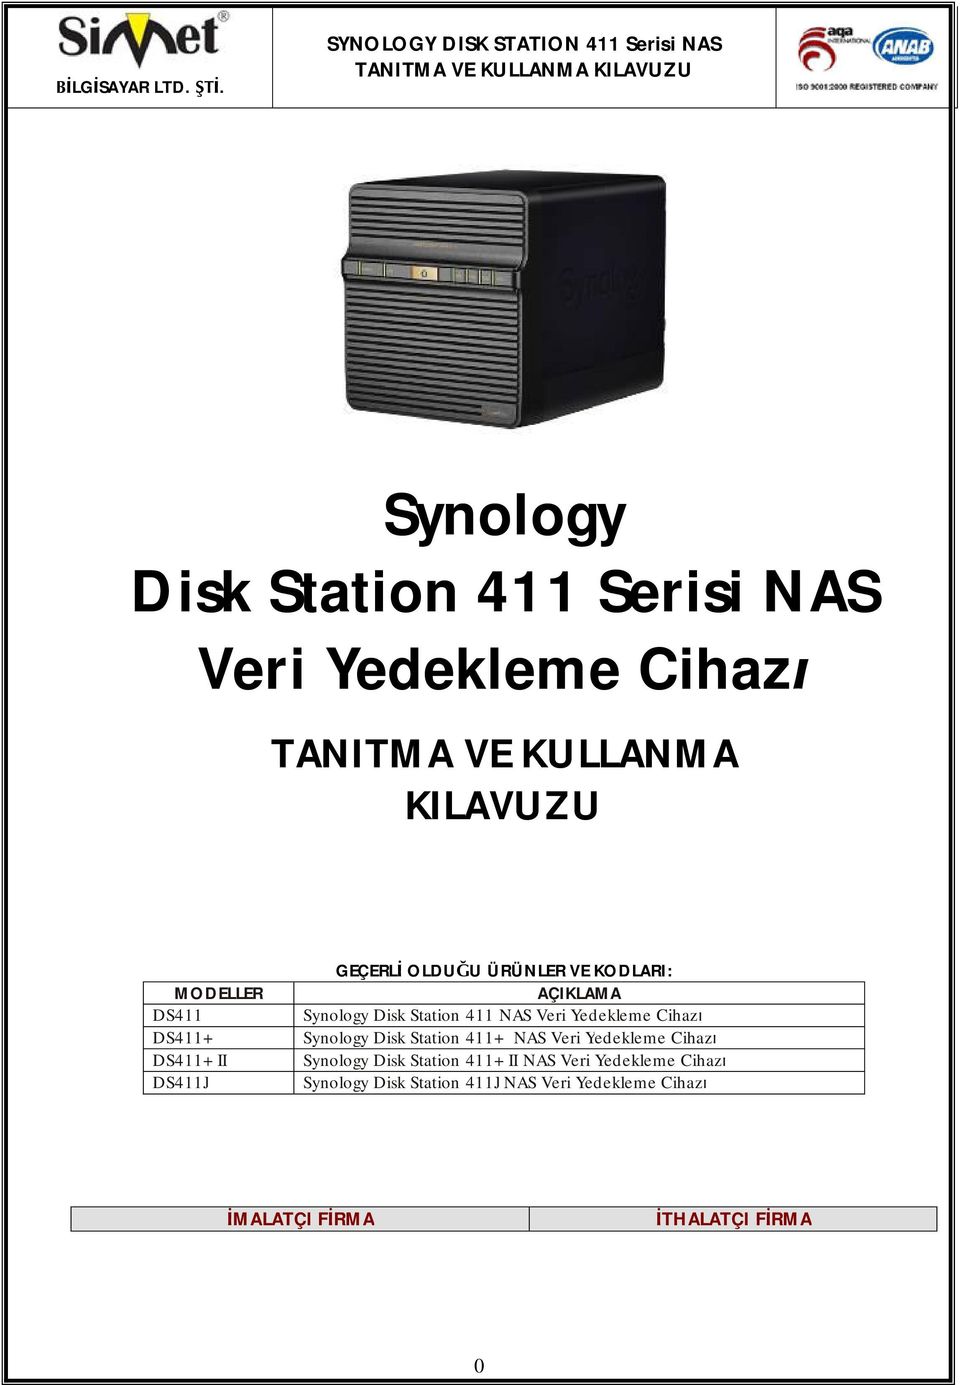 DS411+ DS411+II DS411J GEÇERL OLDUU ÜRÜNLER VE KODLARI: AÇIKLAMA Synology Disk Station 411 NAS Veri